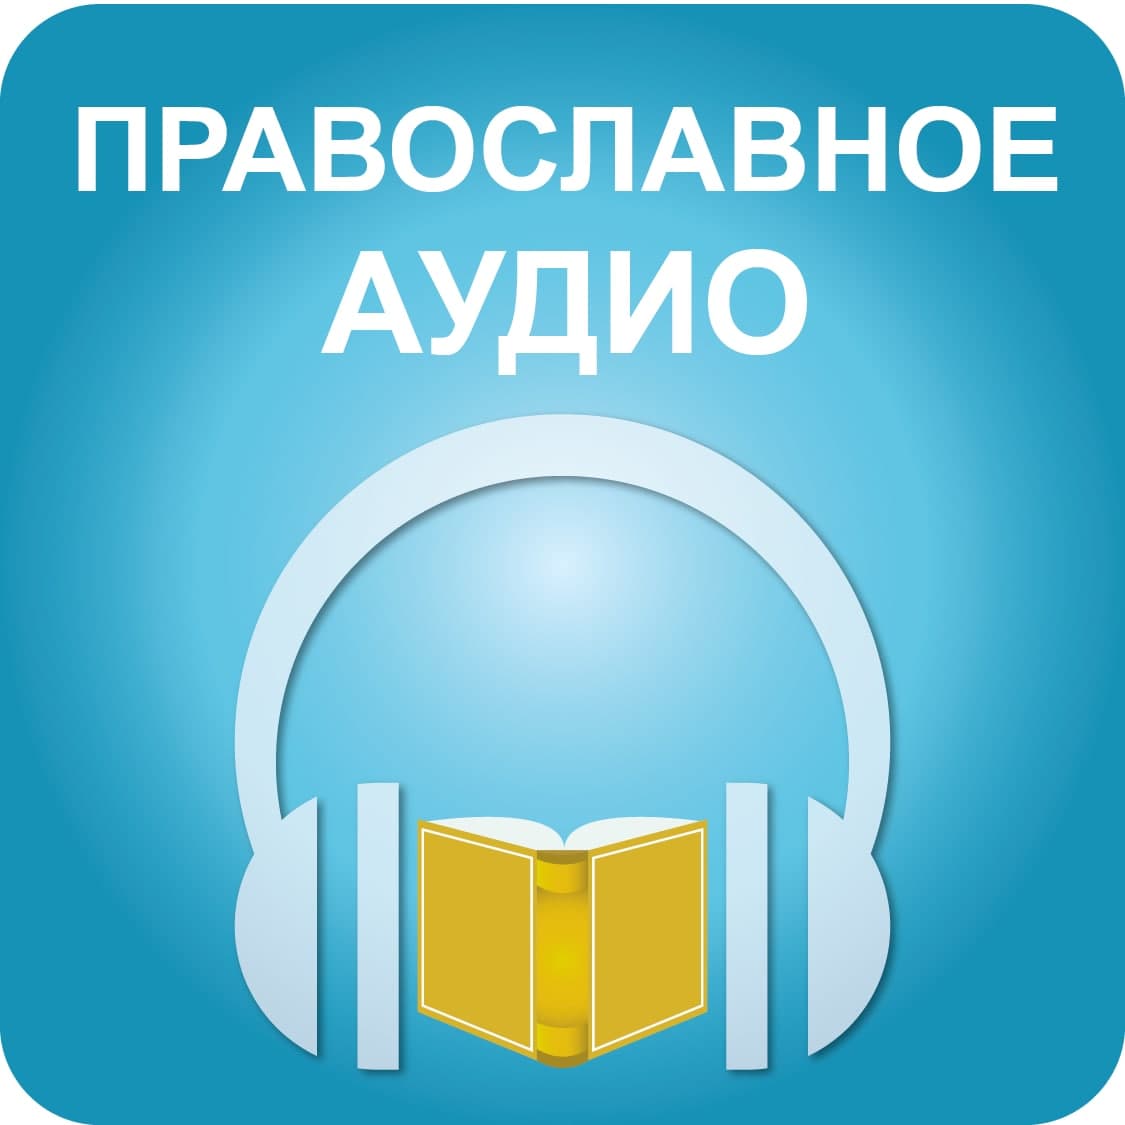 Православные аудио сайты. Православное аудио. Православные аудио сказки. Православные истории для детей аудио.